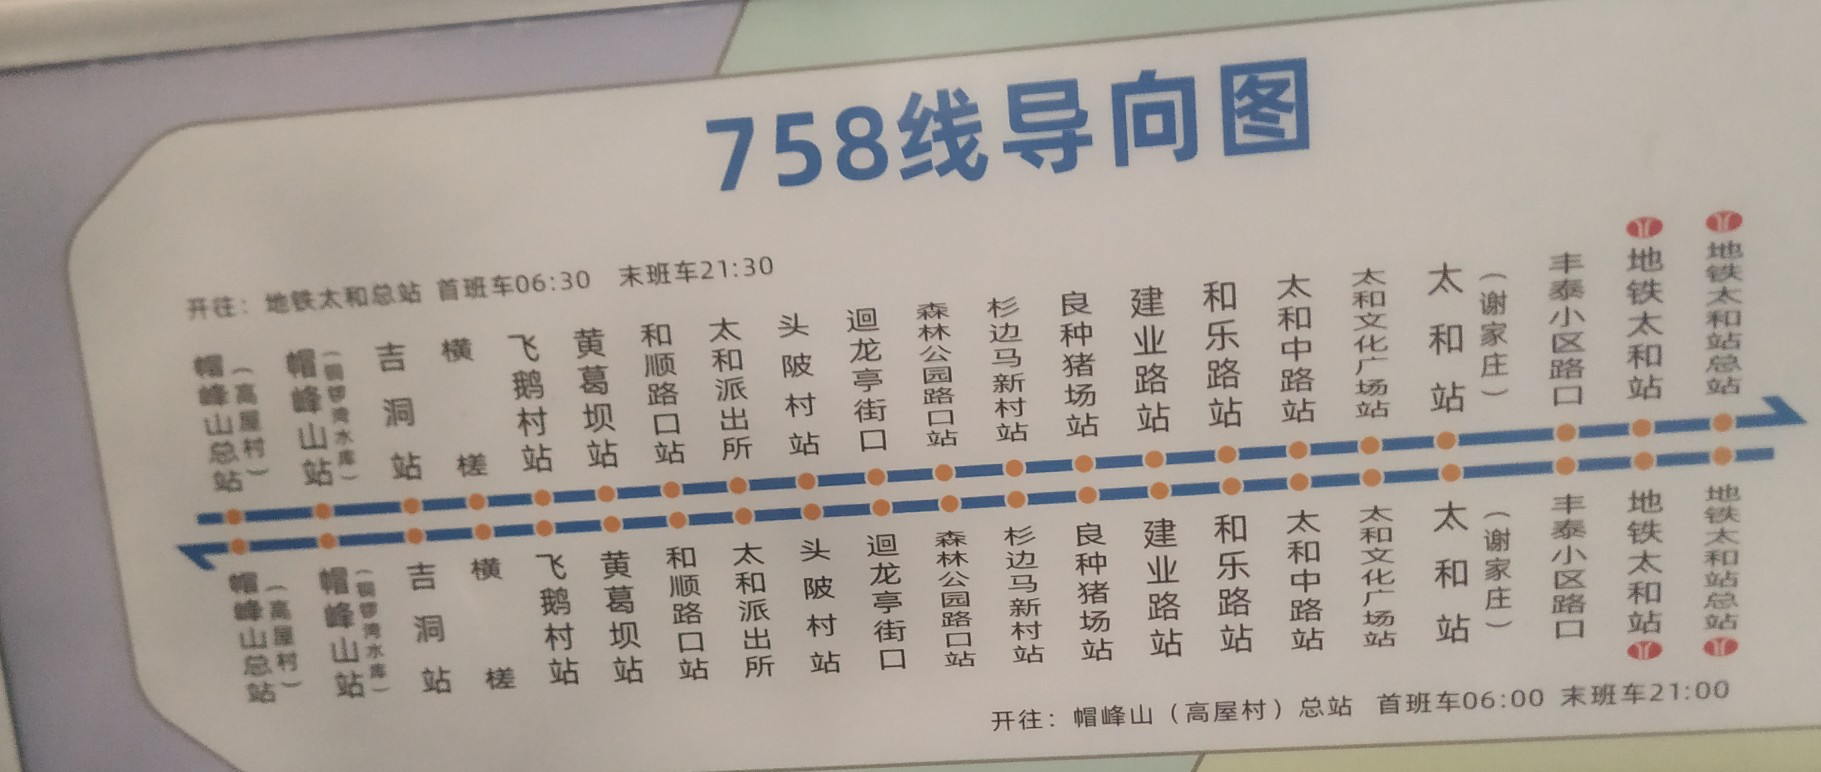 广州758路公交车路线